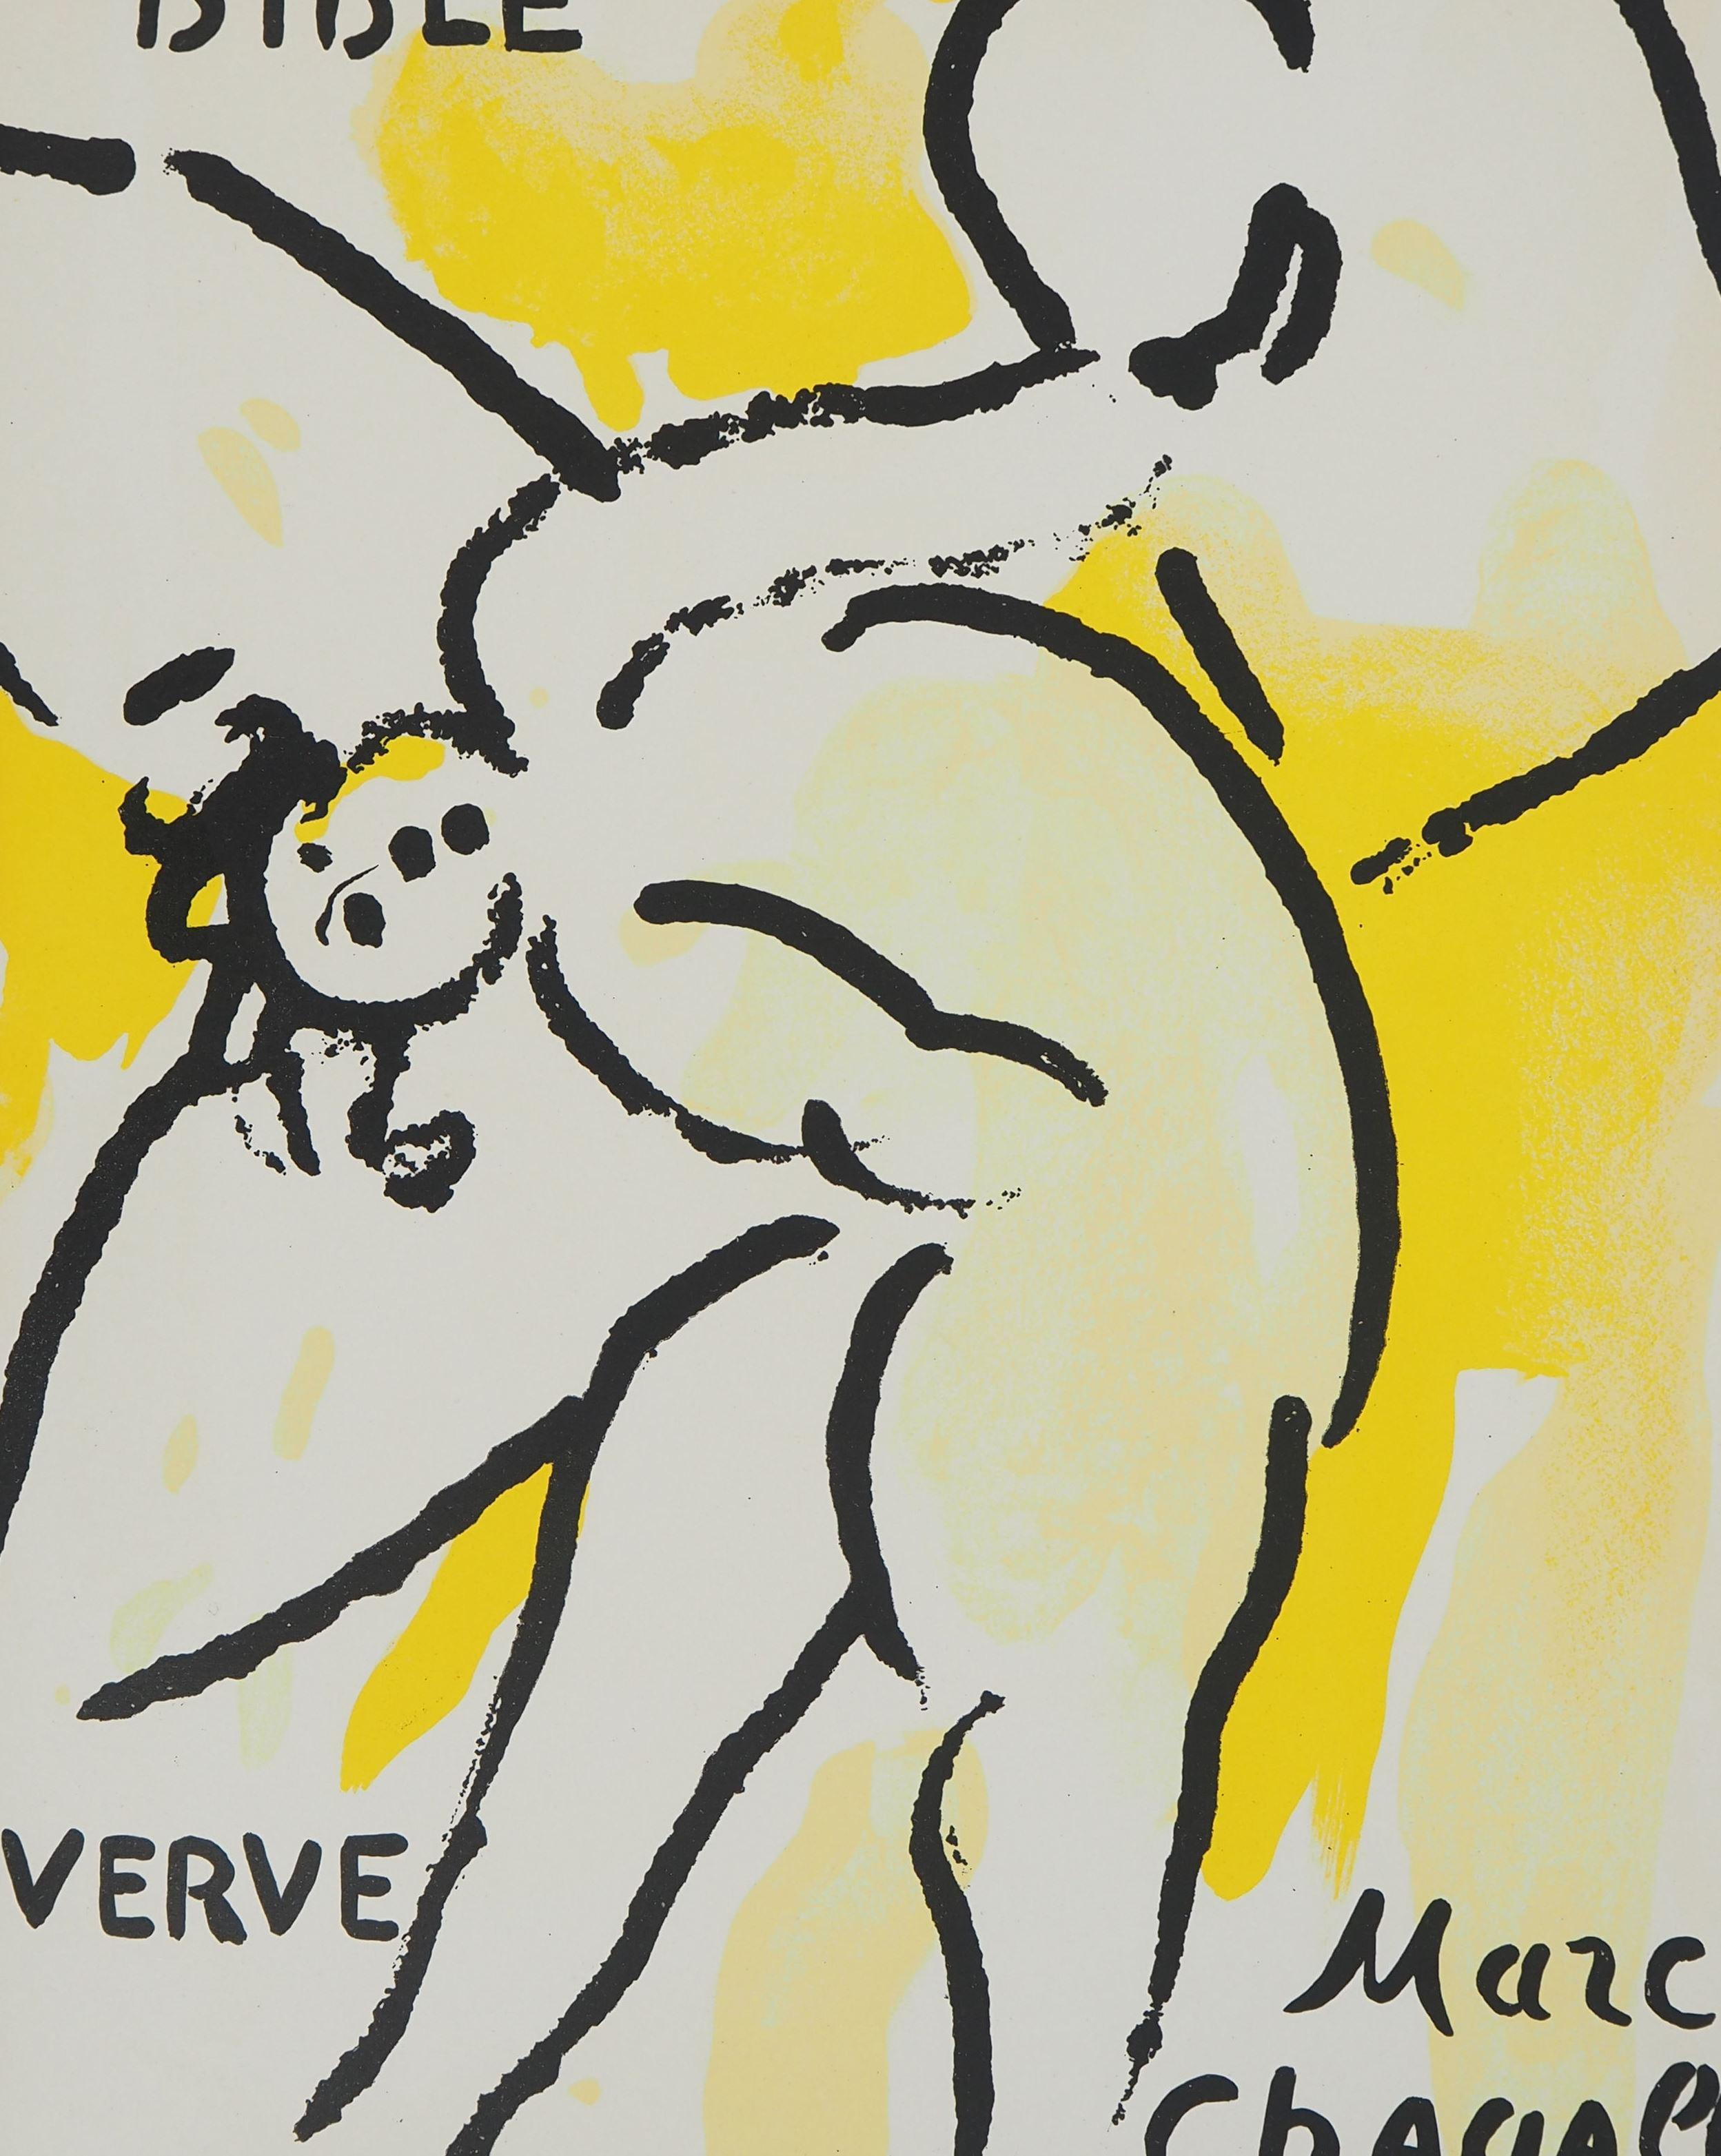 La Bible : L'ange - Lithographie originale - Print de Marc Chagall